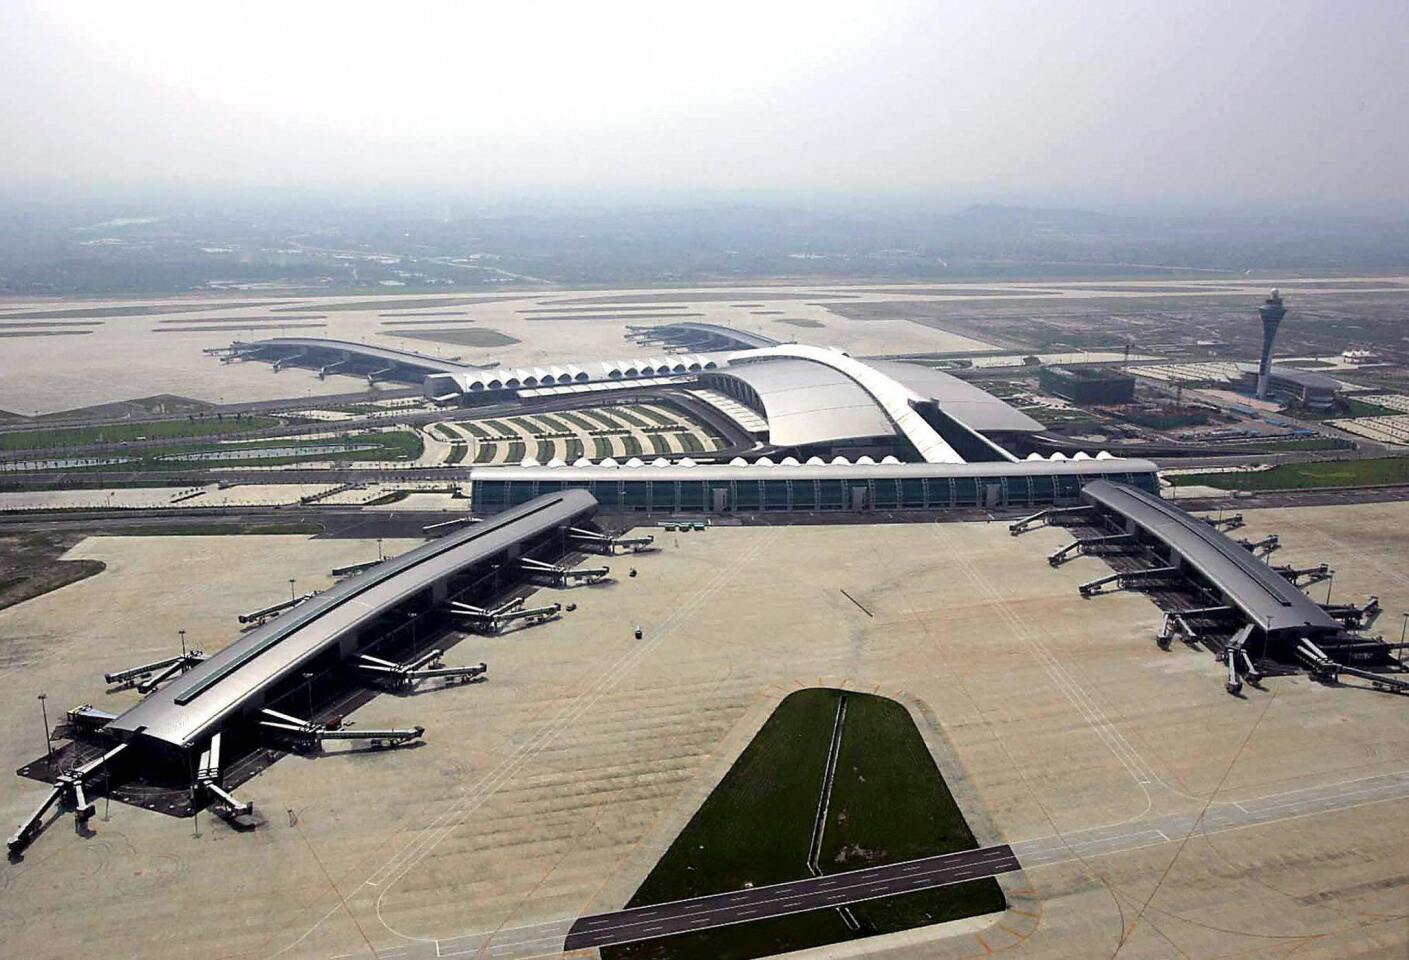 6. Guangzhou Baiyun International Airport in China (CAN)